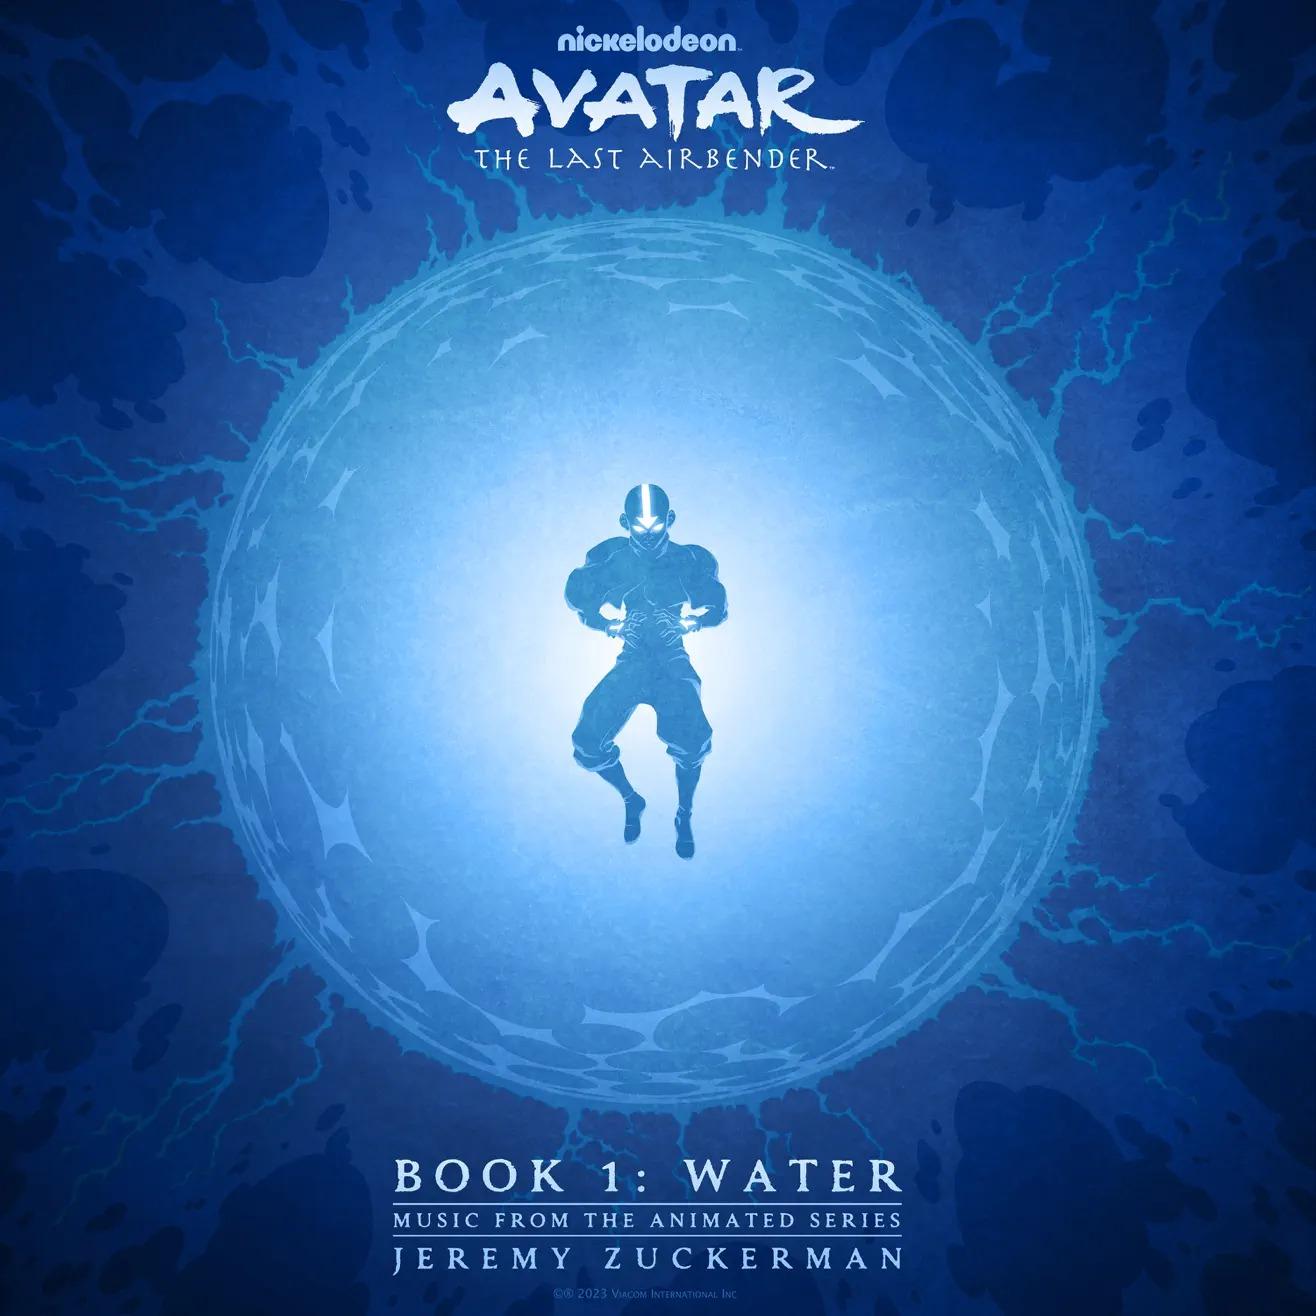 Avatar: The Last Airbender - Aang Becomes Ocean